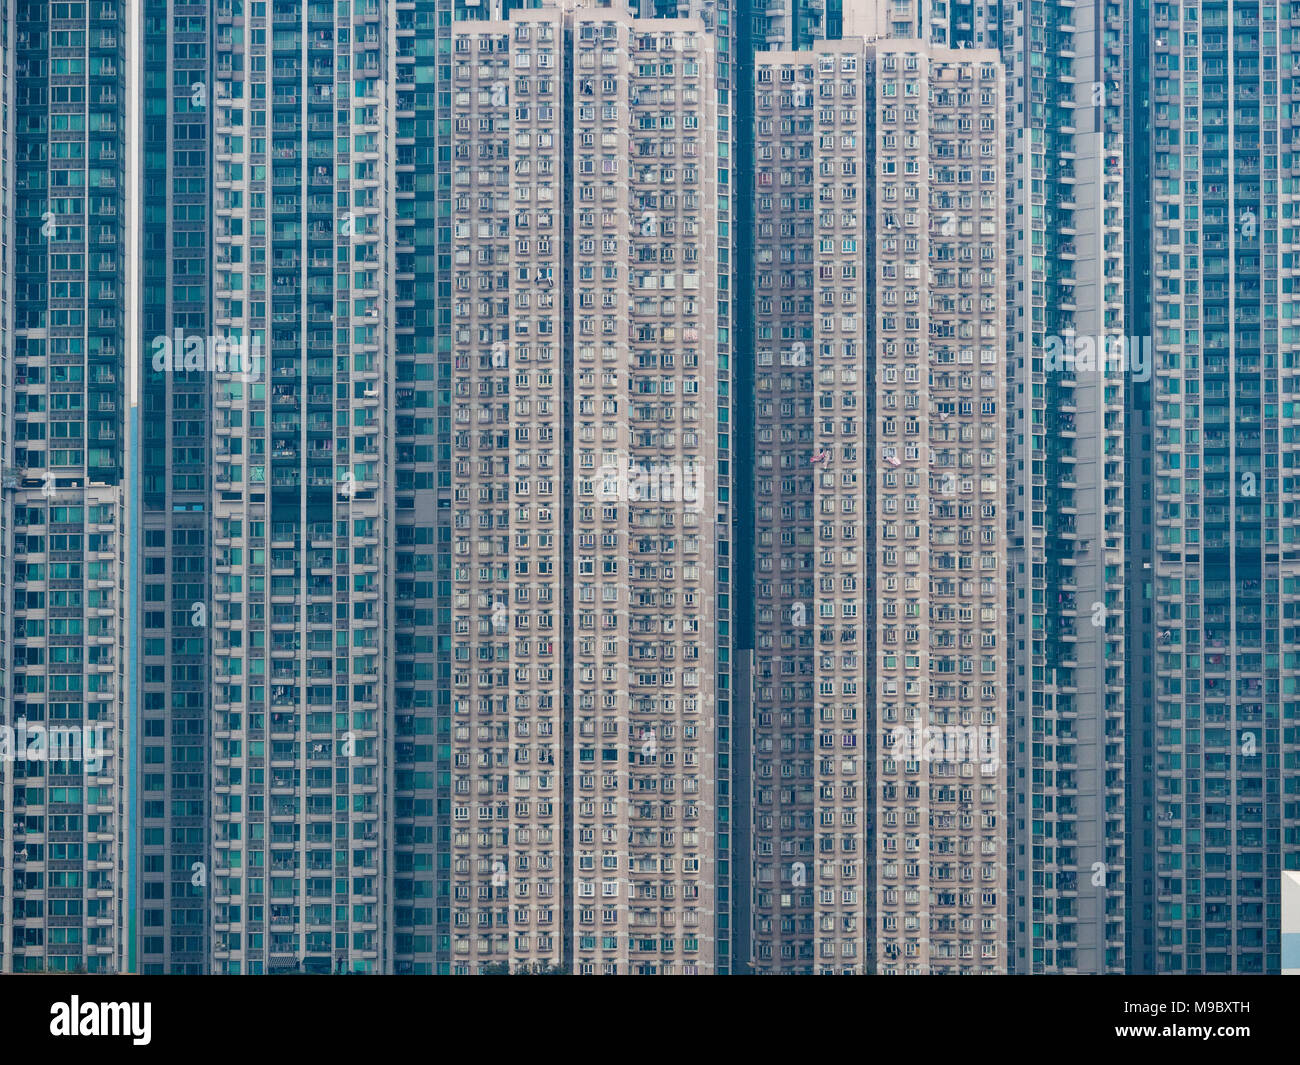 Hong Kong - Haute Densité des logements privés dans la région de Belvedere Garden, Tsuen Wan, Hong Kong, New Territories, construit entre 1987 et 1991. Banque D'Images